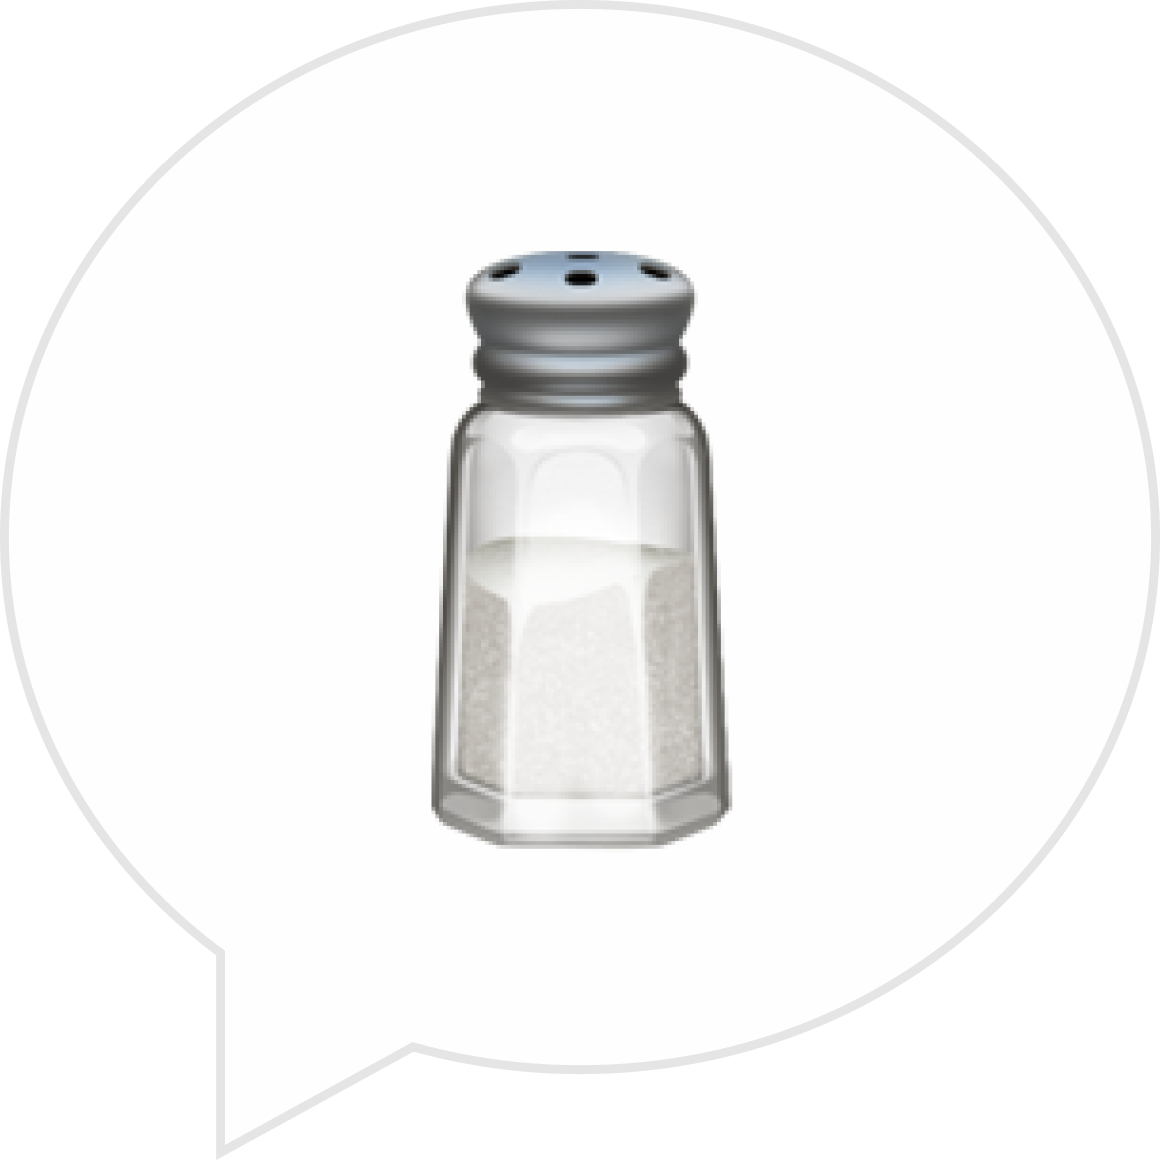 Стоит ли покупать йодированную соль вместо обычной?